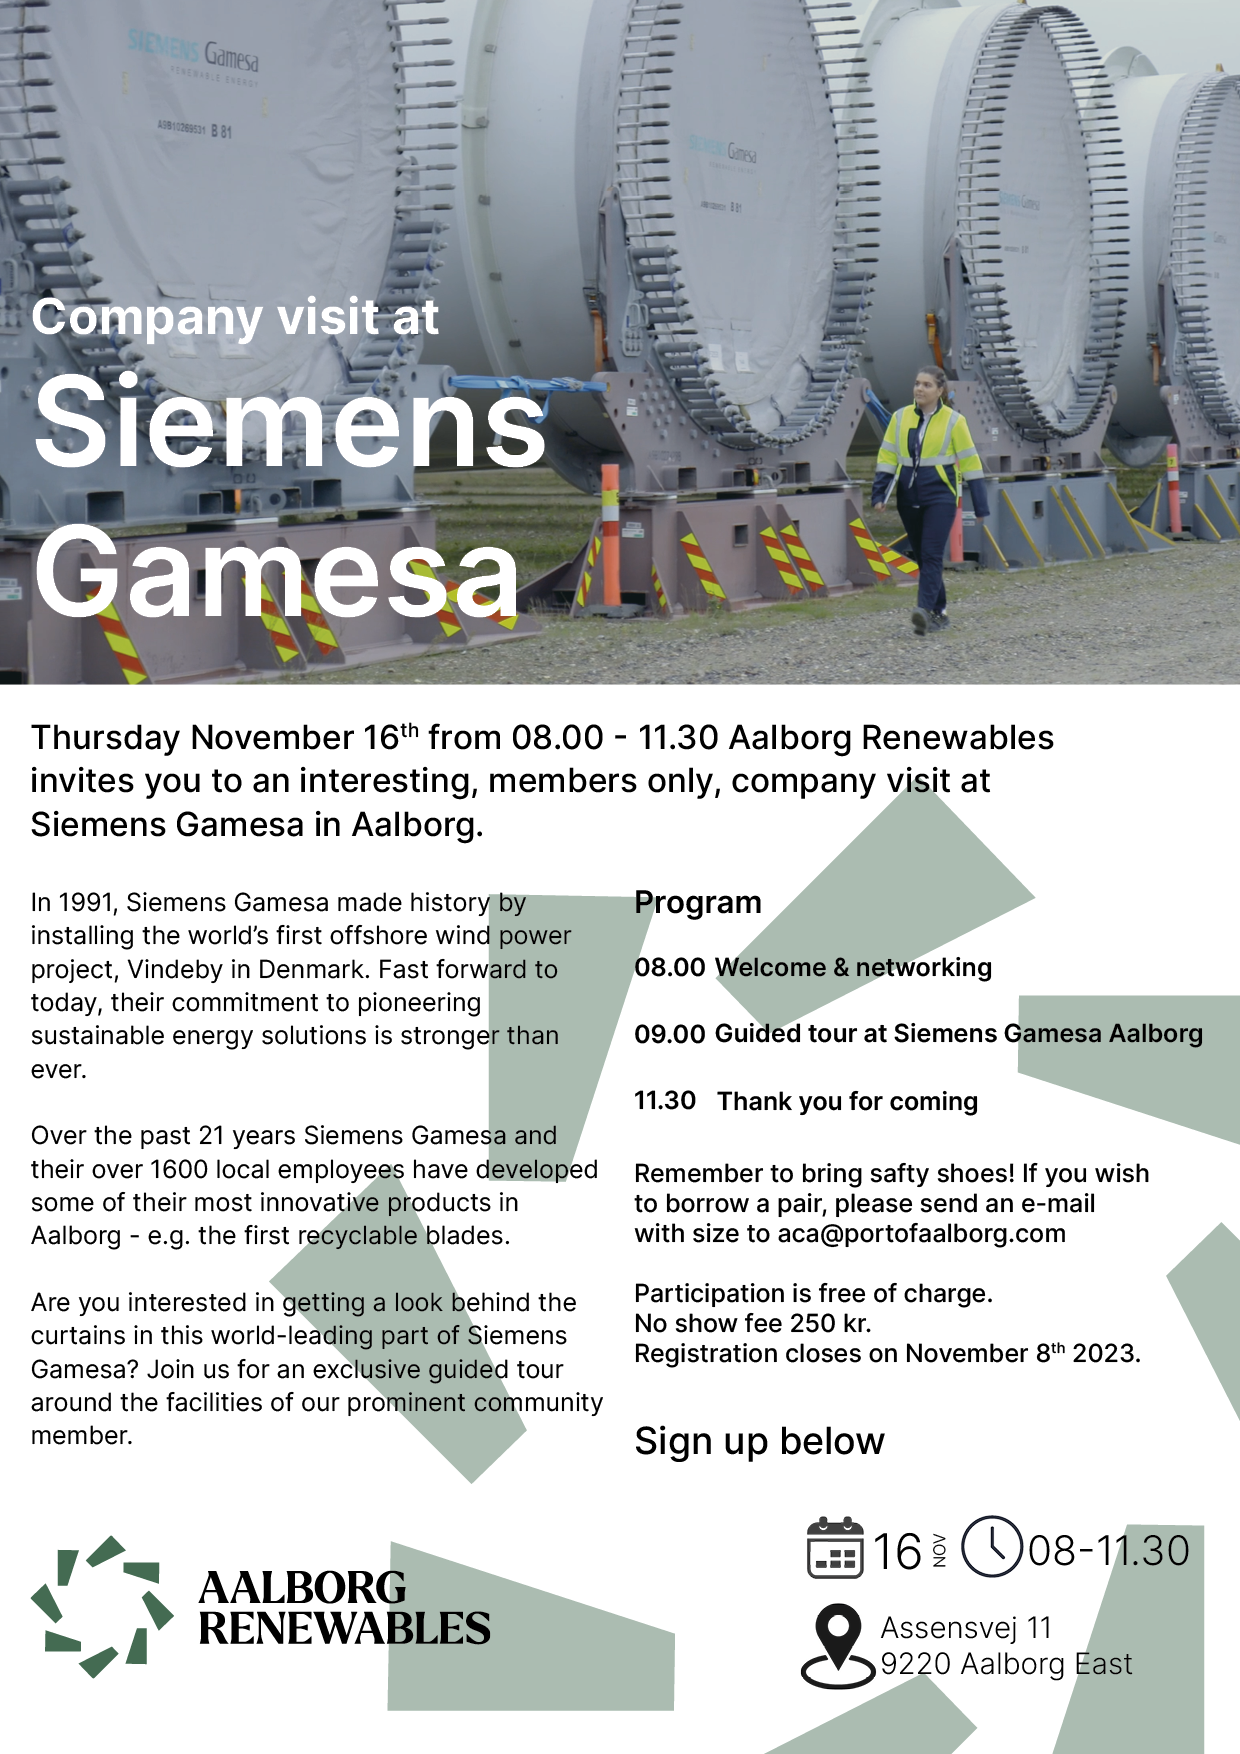 Company visit at Siemens Gamesa